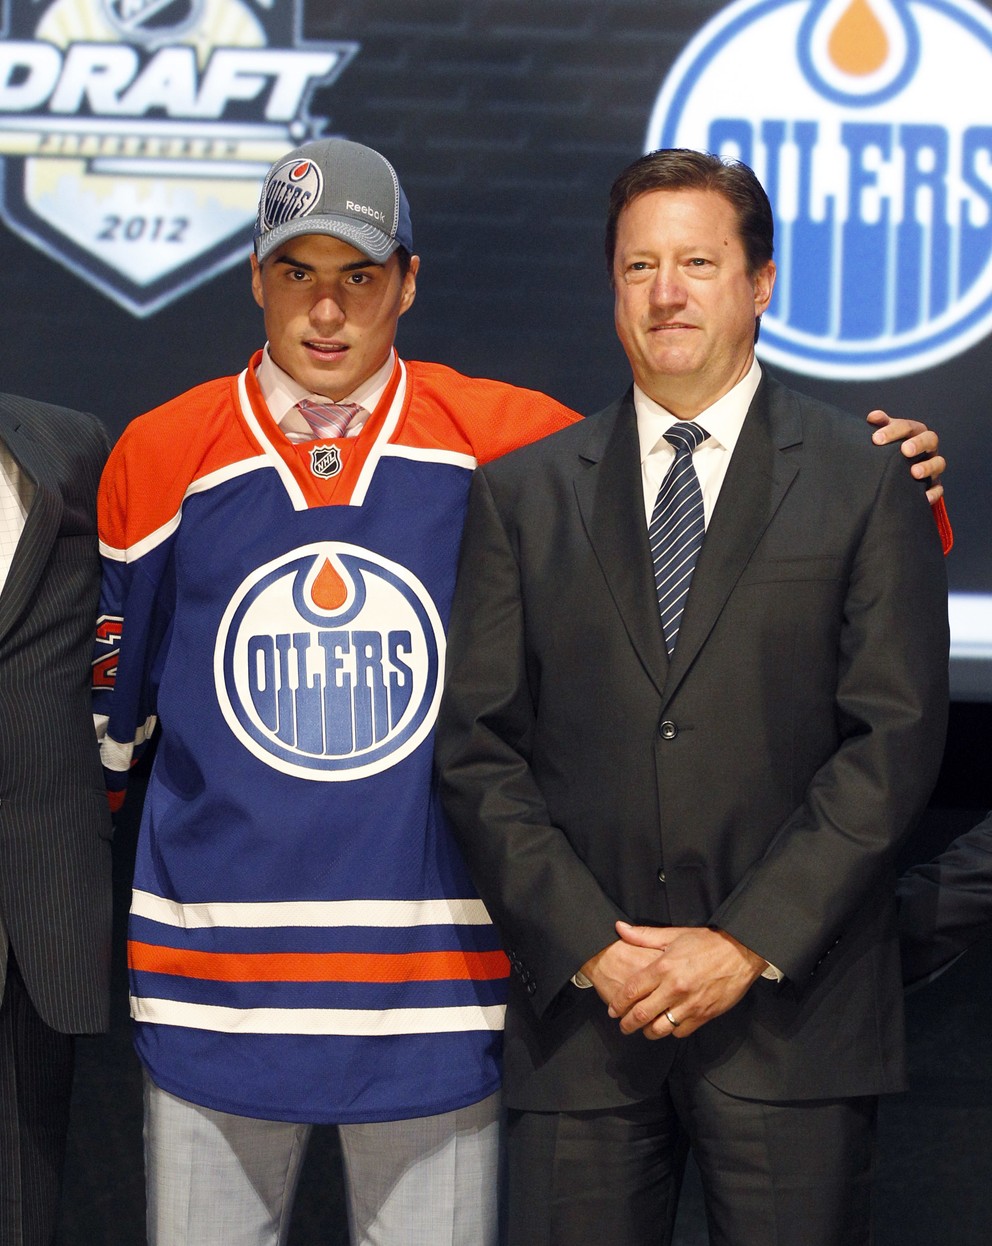 Sľubovali si od neho veľa. Draftová jednotka z roku 2012 sa však v Edmontone výrazne nepresadila.